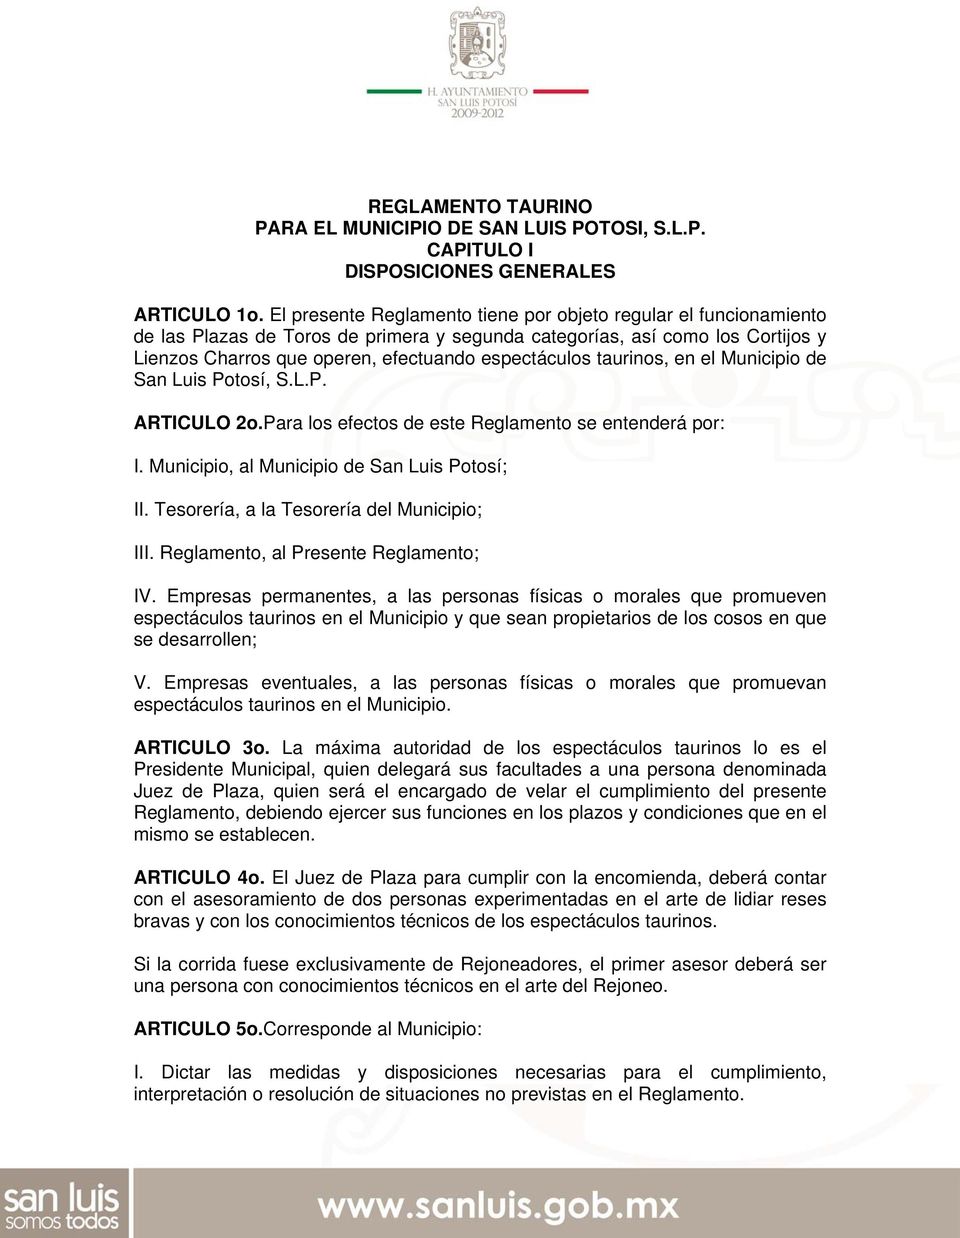 taurinos, en el Municipio de San Luis Potosí, S.L.P. ARTICULO 2o.Para los efectos de este Reglamento se entenderá por: I. Municipio, al Municipio de San Luis Potosí; II.